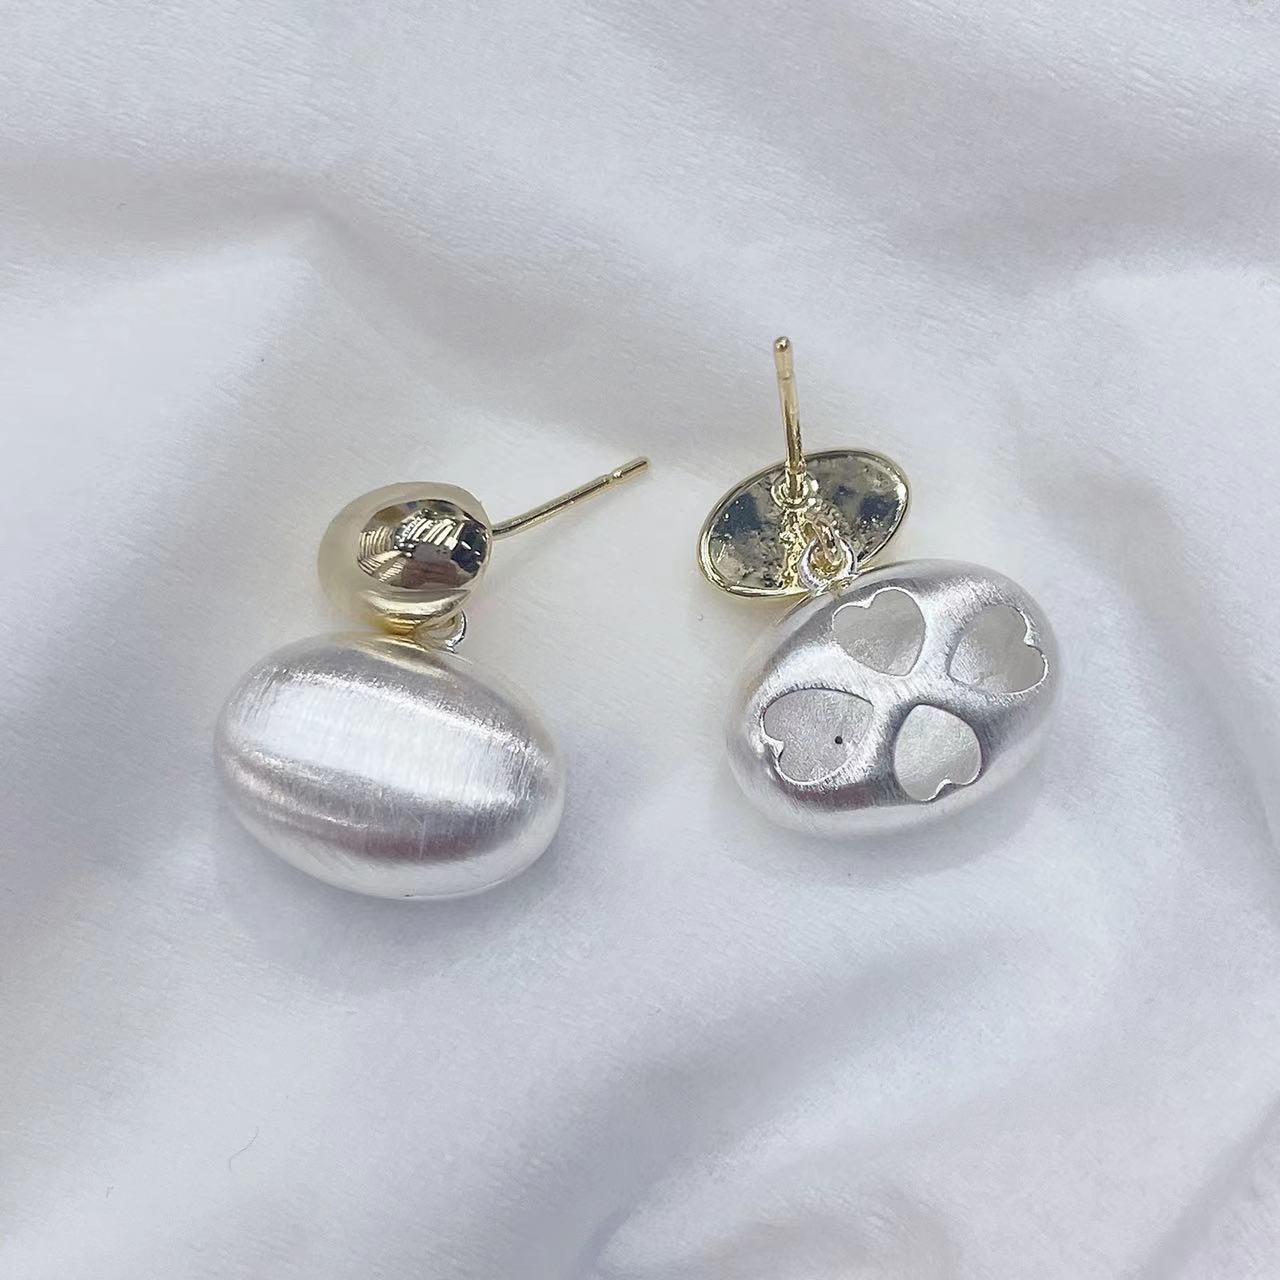 铜合金设计银拉丝银豆豆时尚耳环